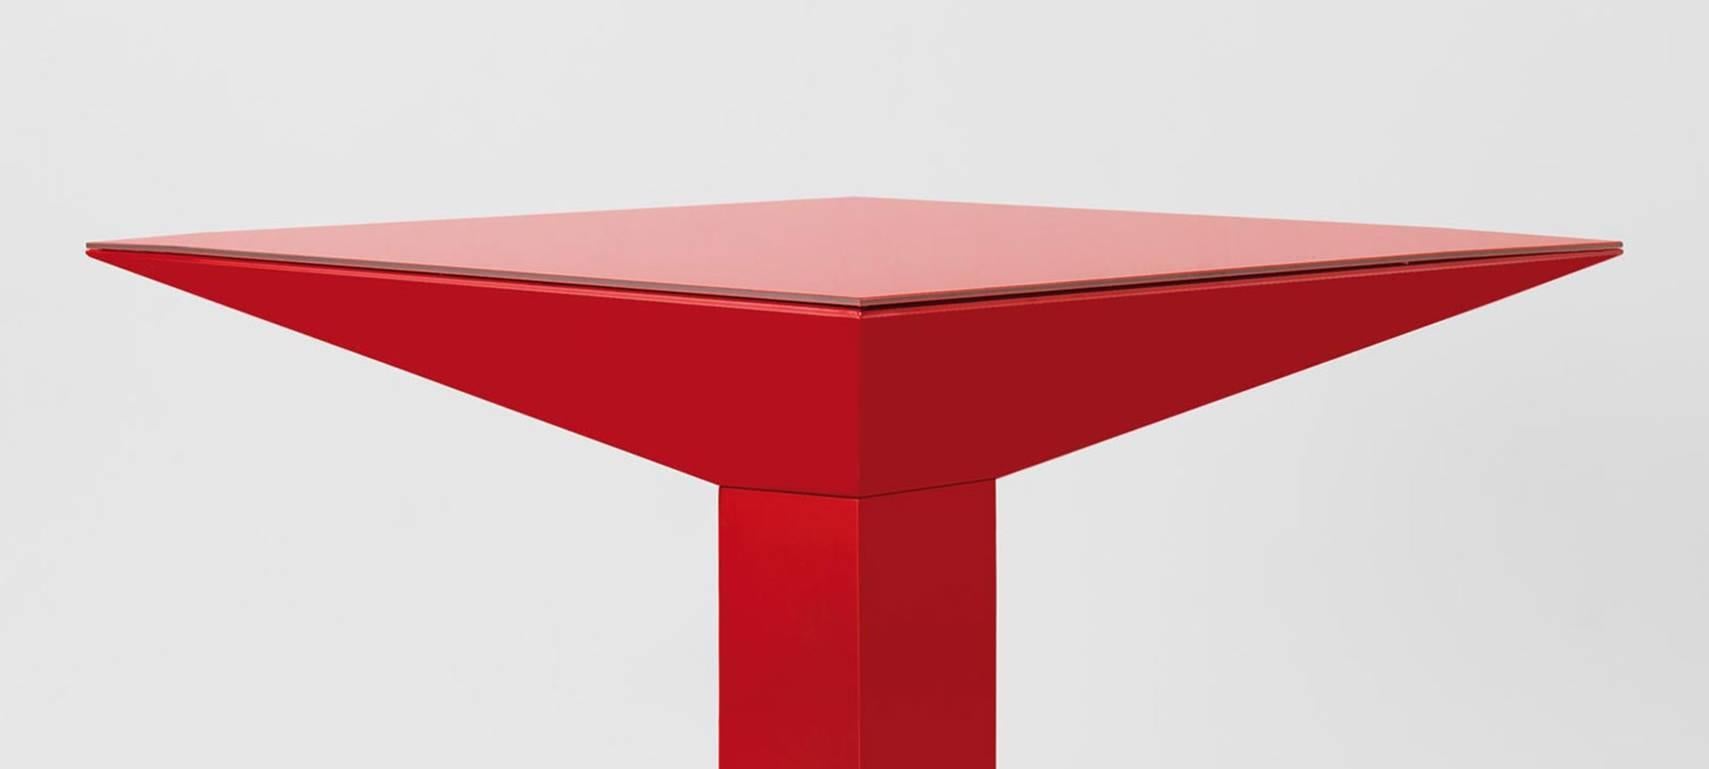 Mettsass-Tisch, entworfen von Ettore Sottsass in Barcelona, hergestellt von BD.

Die Struktur besteht aus flachen Stahlblechen, lackiert in Rot RAL 3001. Das Glas ist in der gleichen Farbe wie die Struktur lackiert.

Maße: 110 x 110 x H 73 cm

In